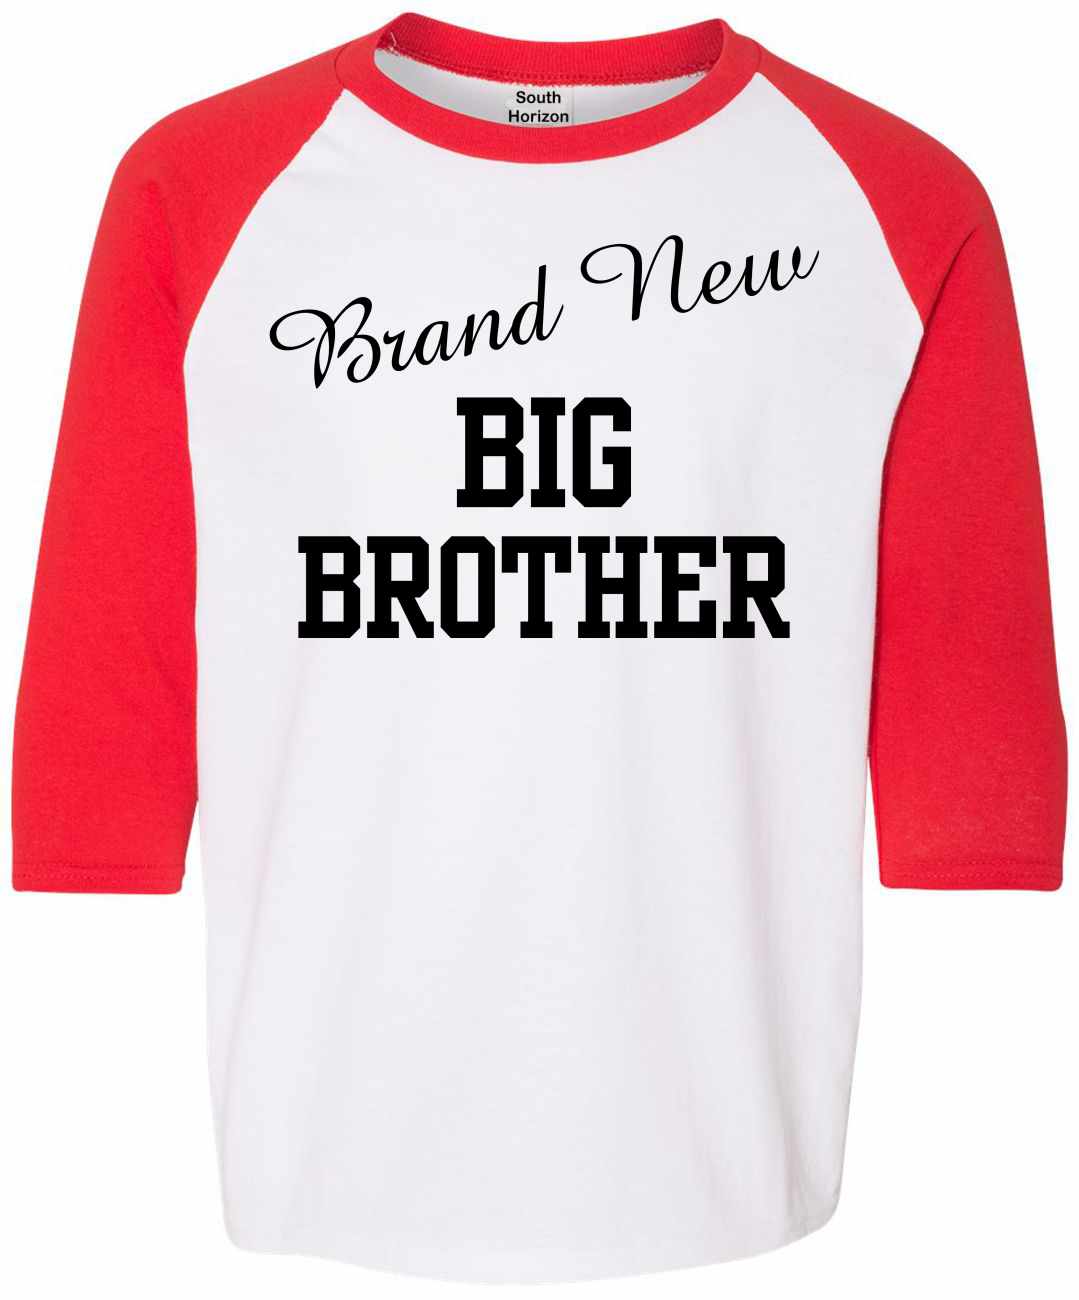 Brand New Big Brother on Youth Baseball Shirt